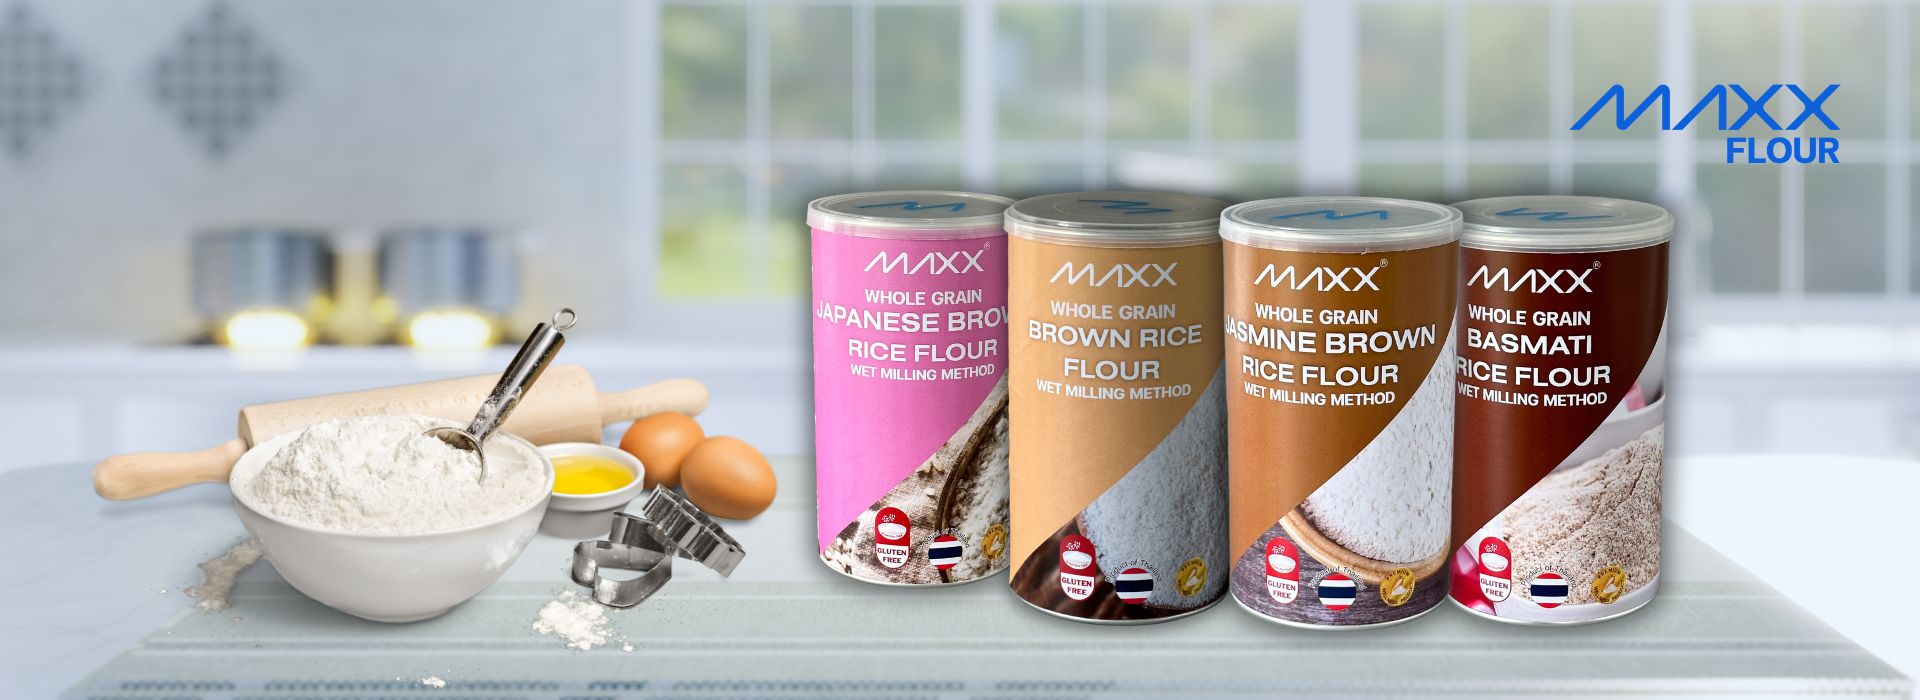 Maxx brown rice flour